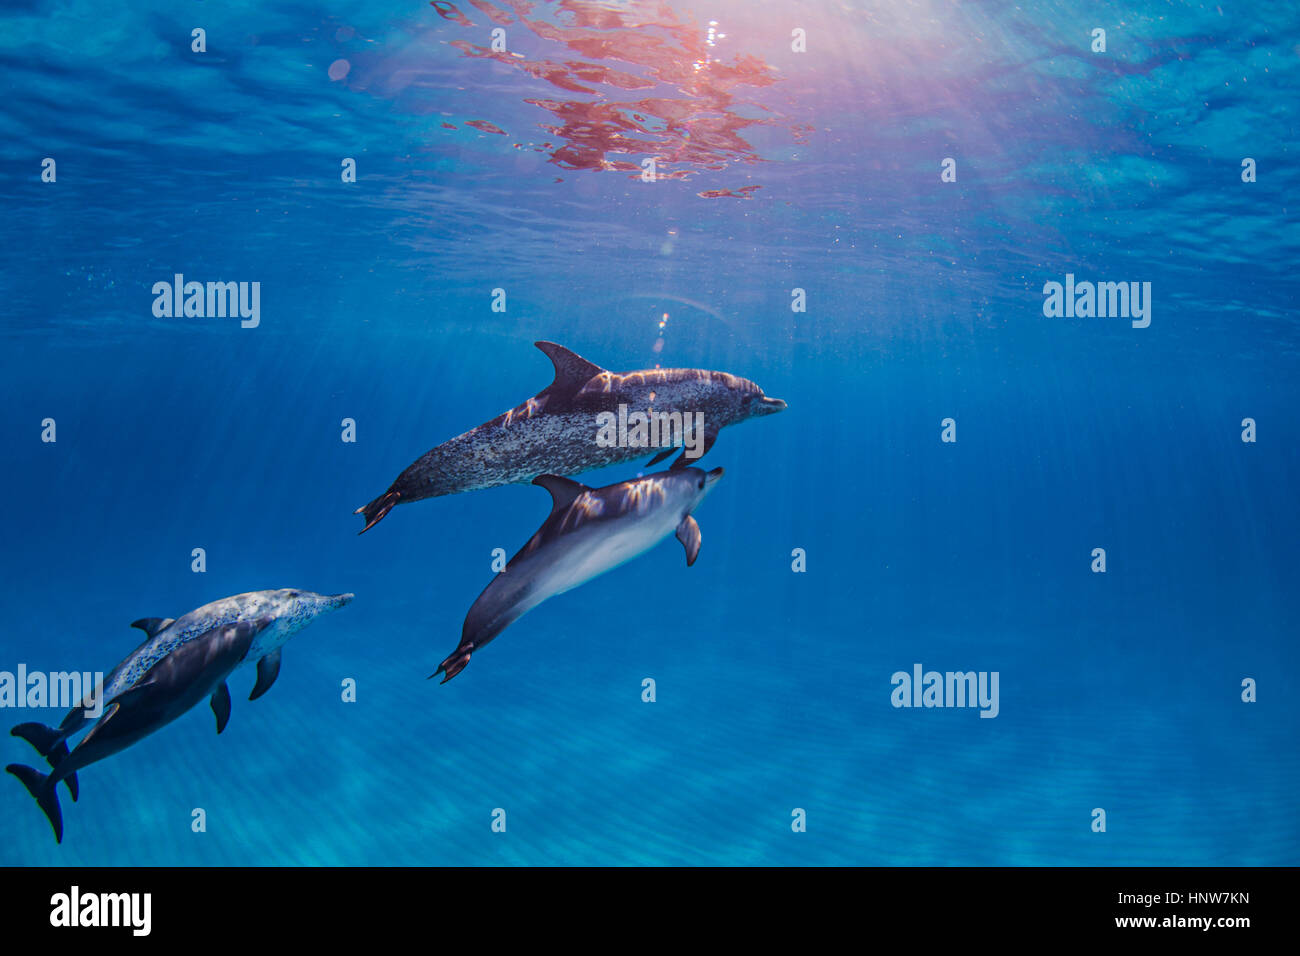 Grupo de delfines moteados del Atlántico, vista submarina Foto de stock